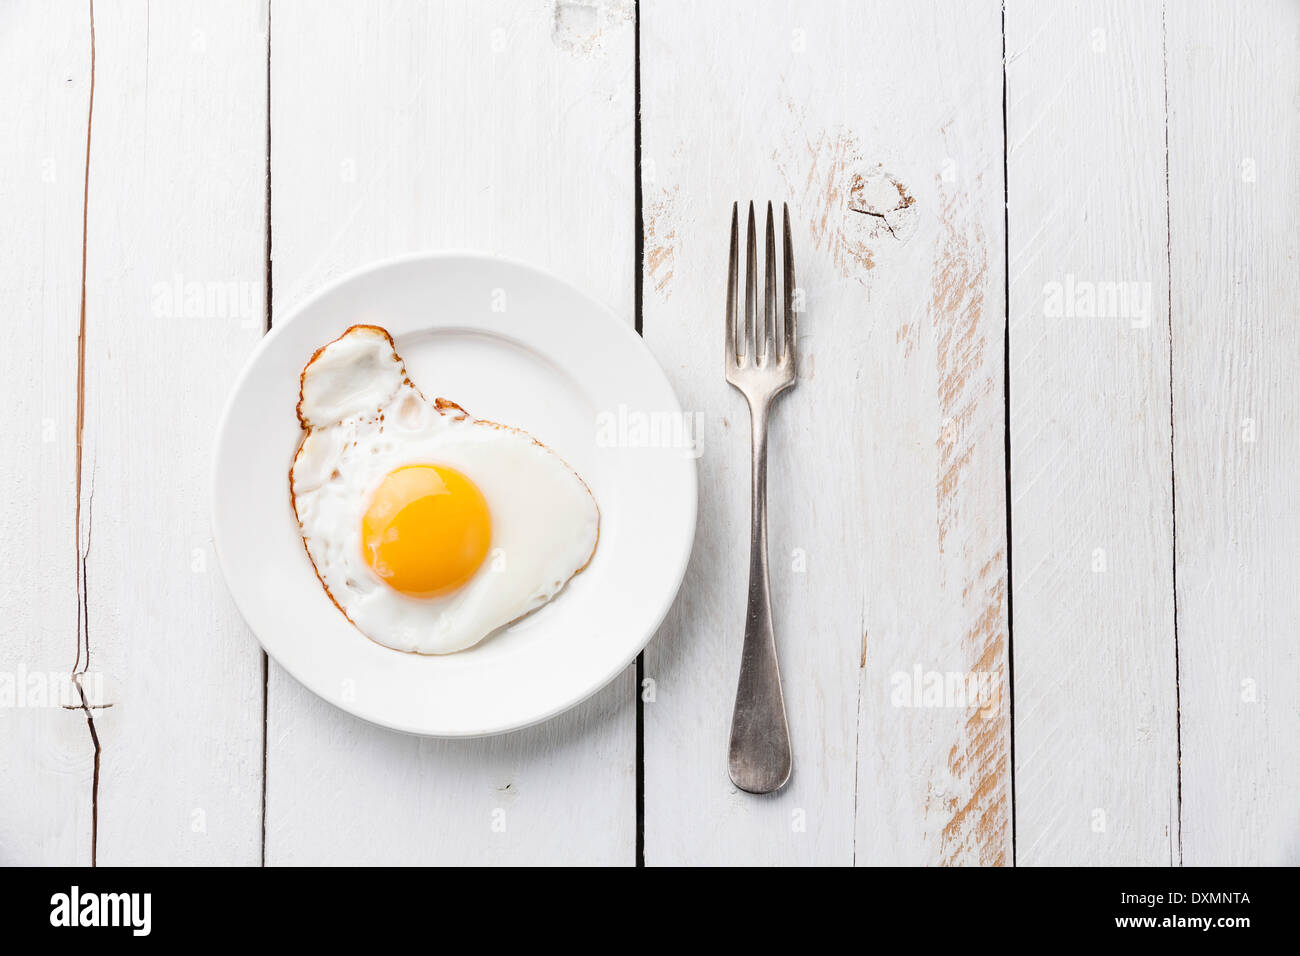 Spiegelei zum Frühstück Stockfoto